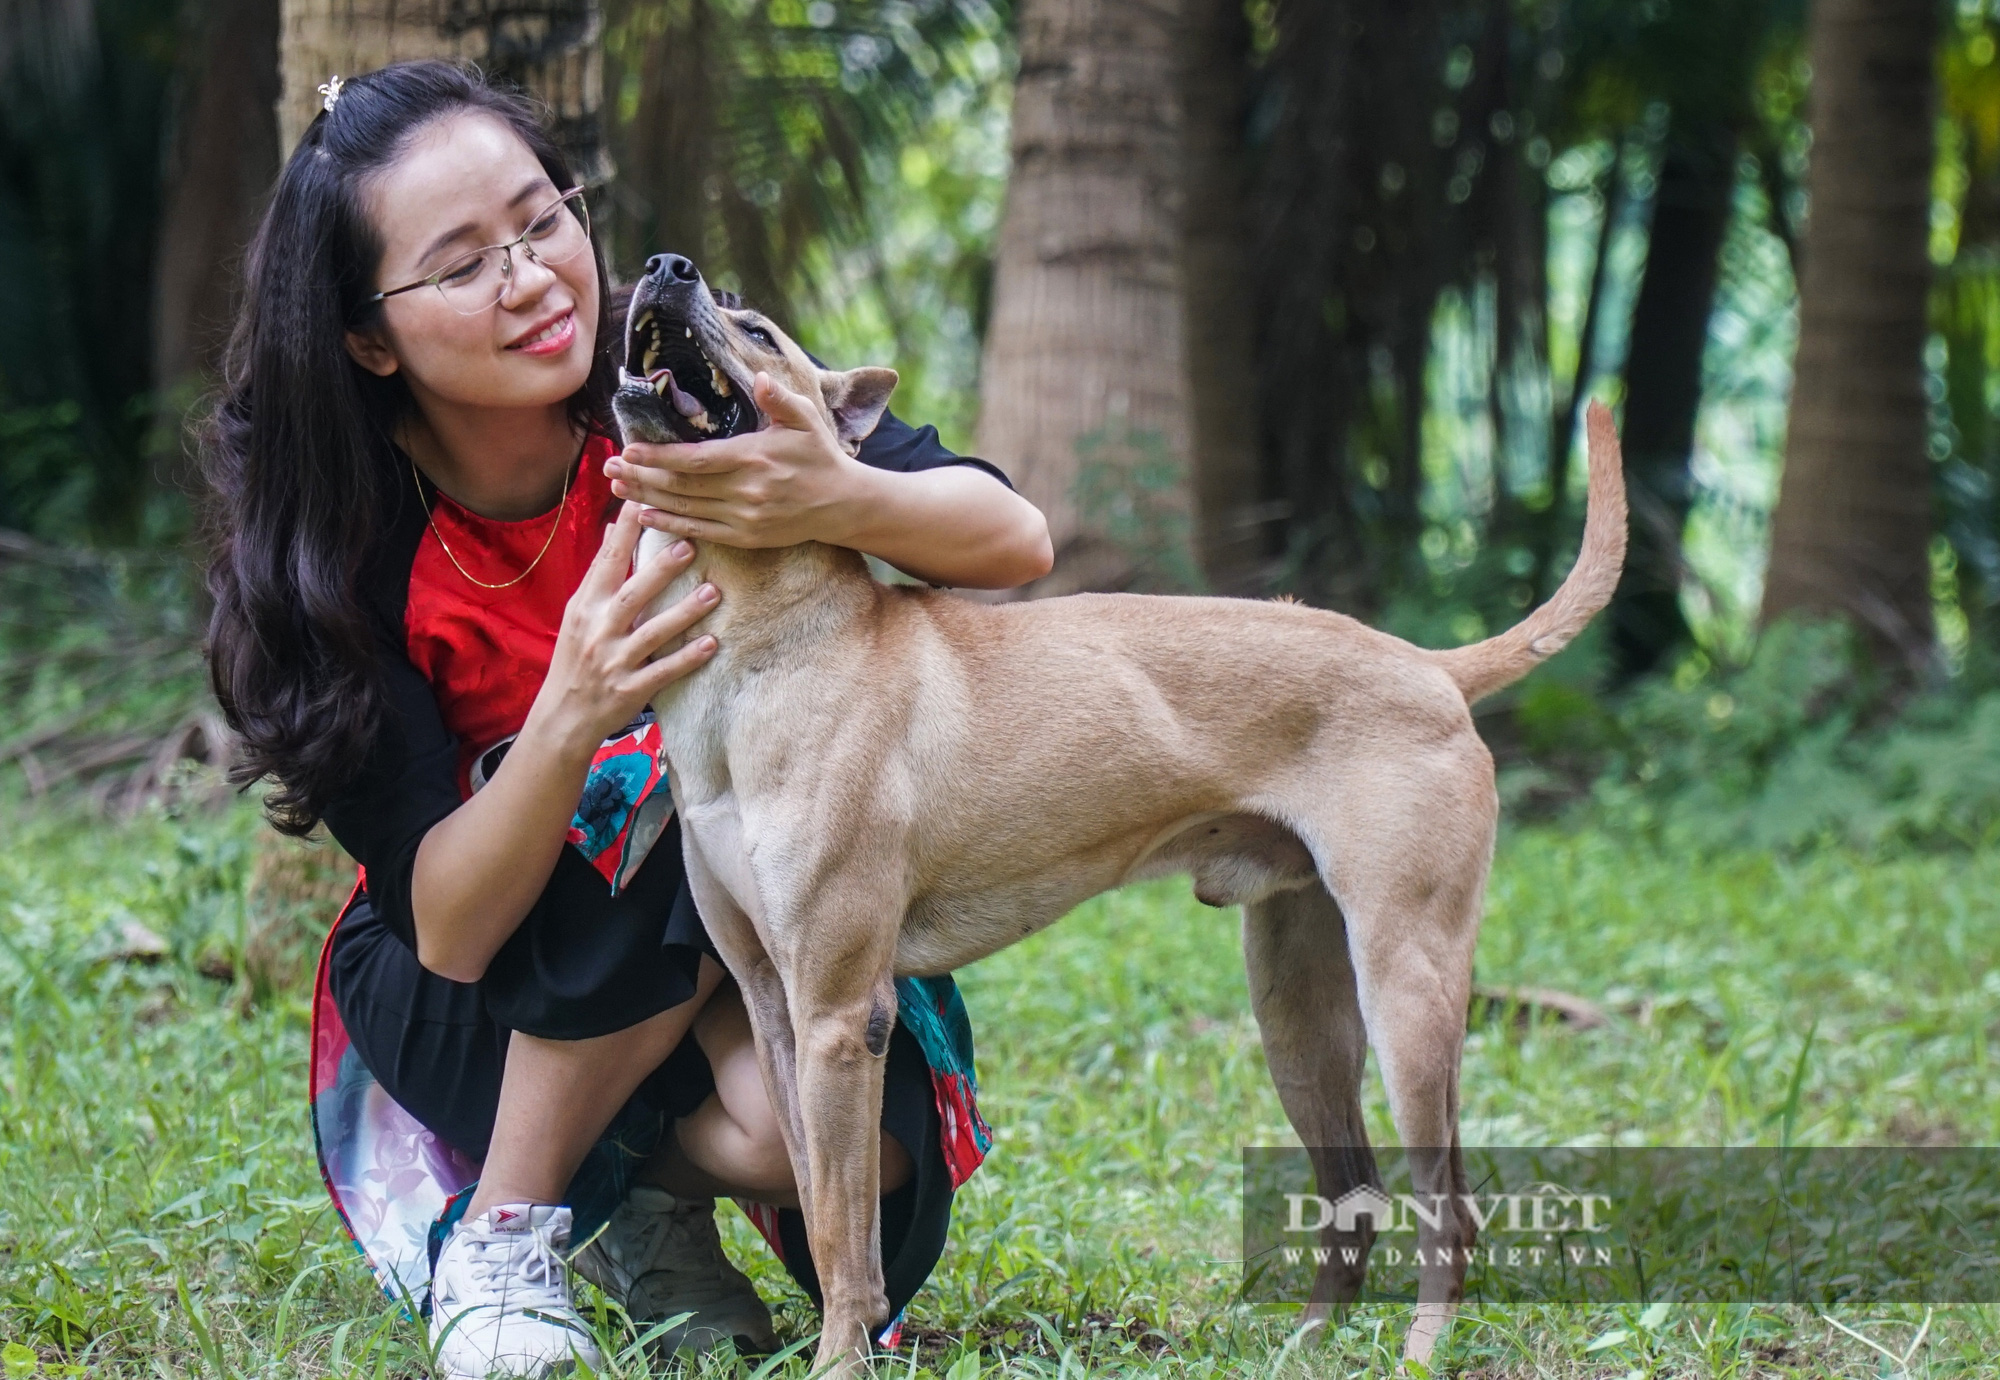 Giá trị: Sở hữu một chú chó Phú Quốc không chỉ mang lại niềm vui và tình cảm đến cho gia đình, mà còn là một khoảng trống tinh thần và giá trị của cuộc sống.